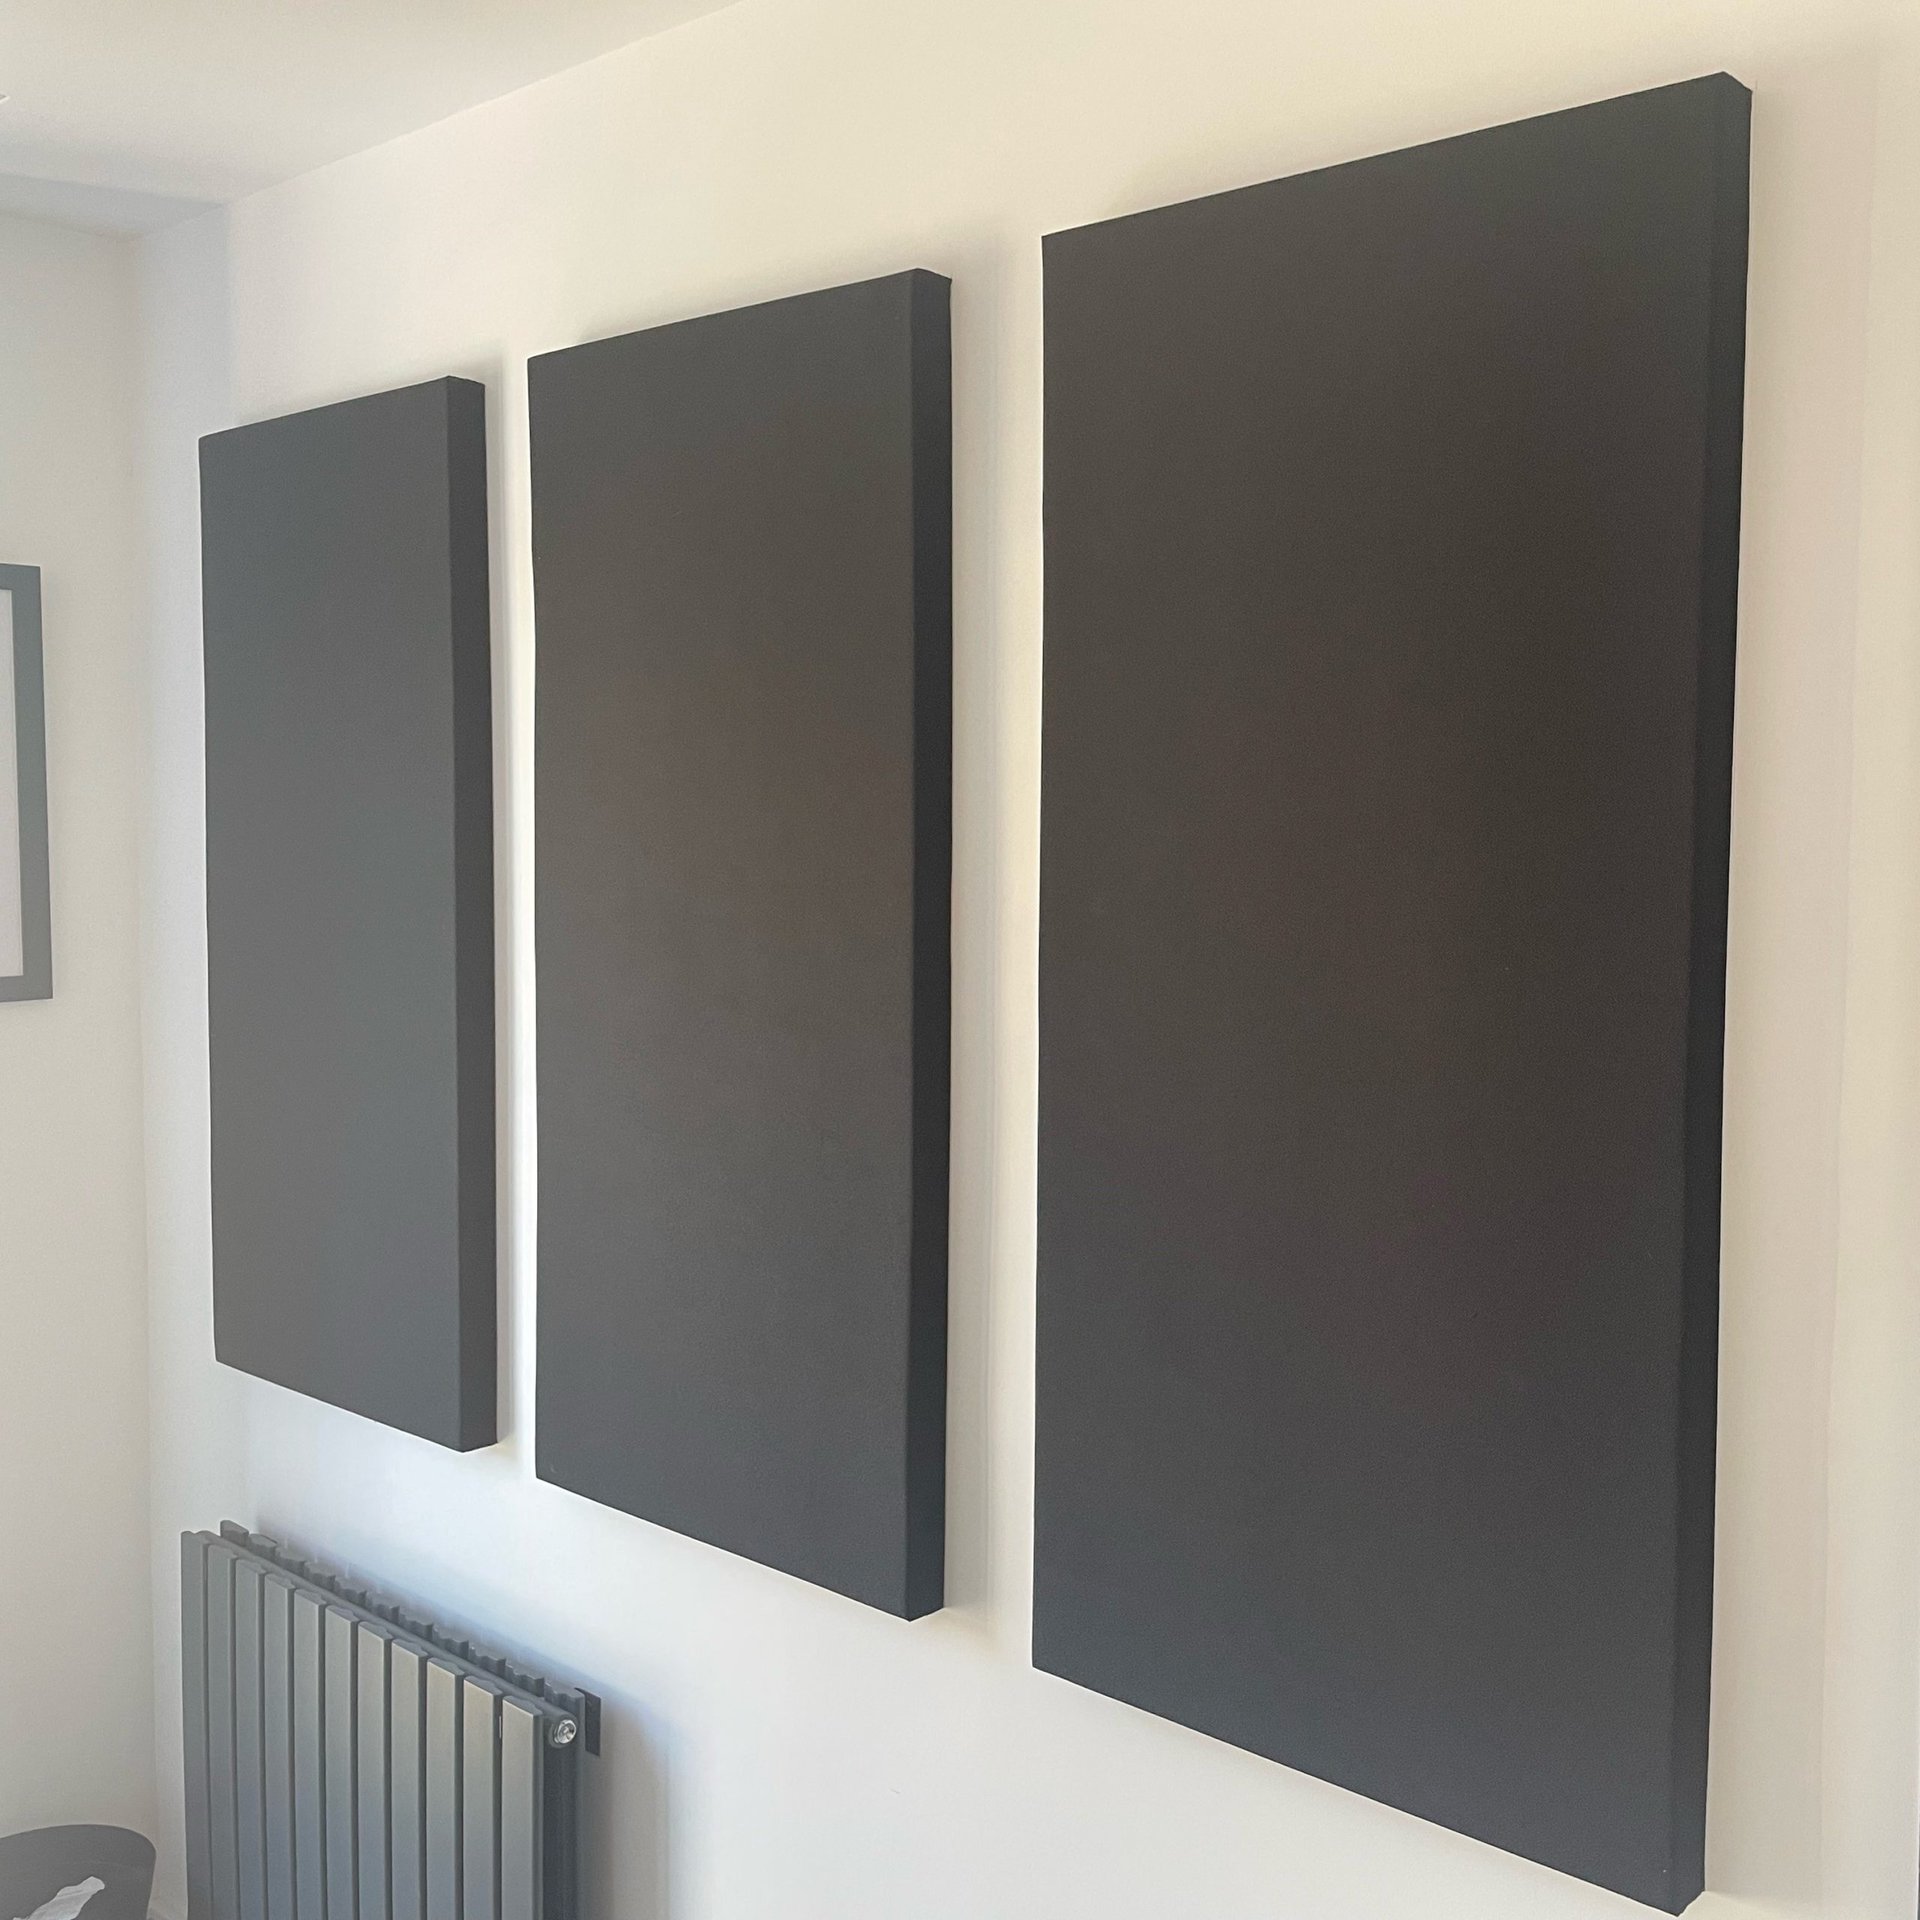 Black panels square